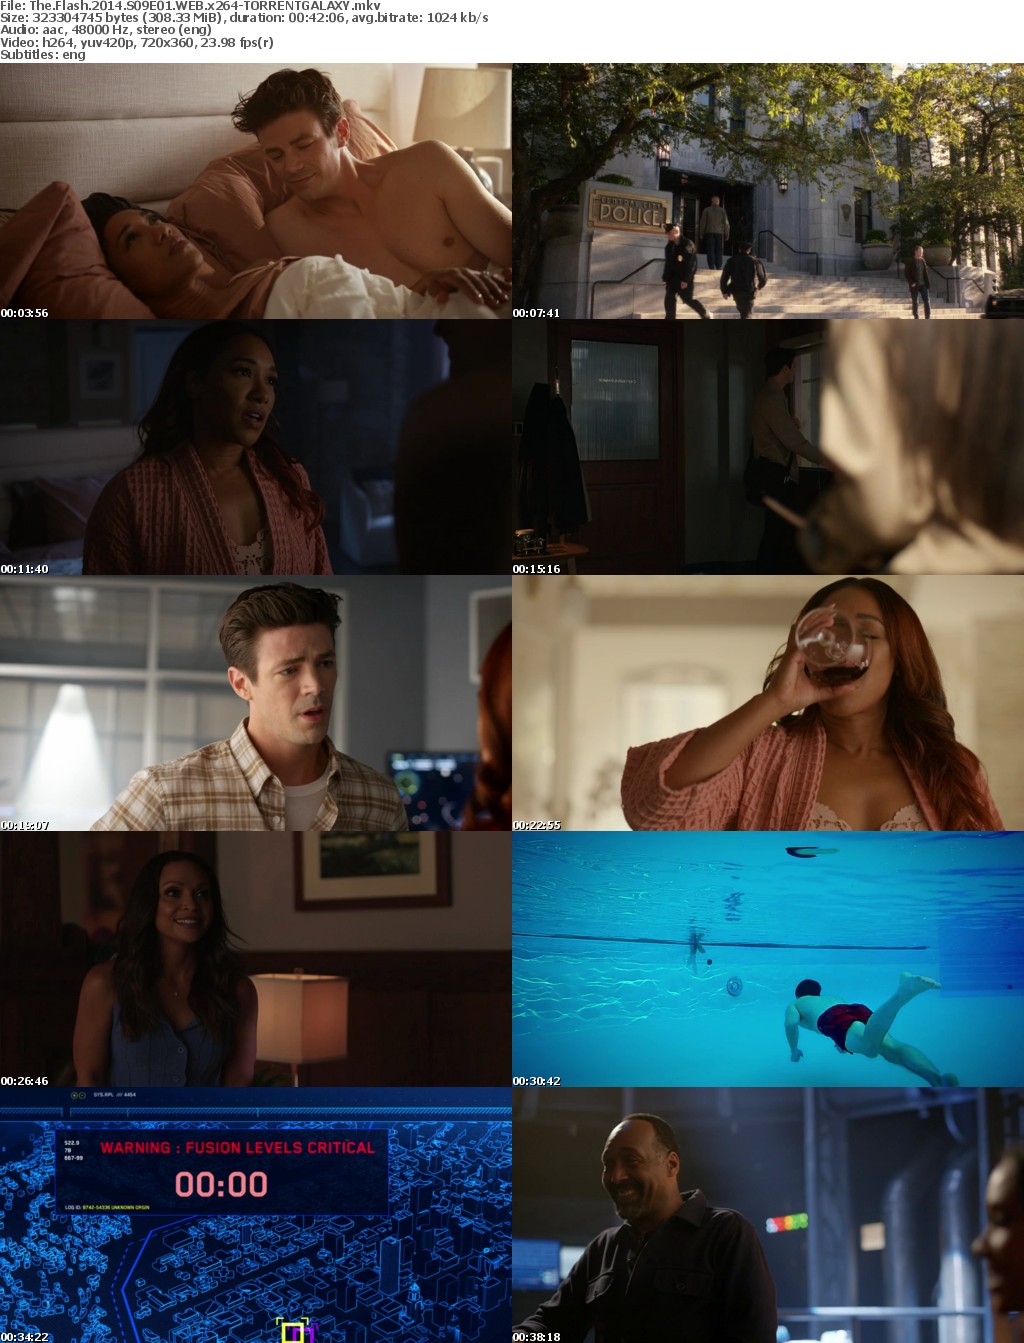 The Flash 2014 S09E01 WEB x264-GALAXY